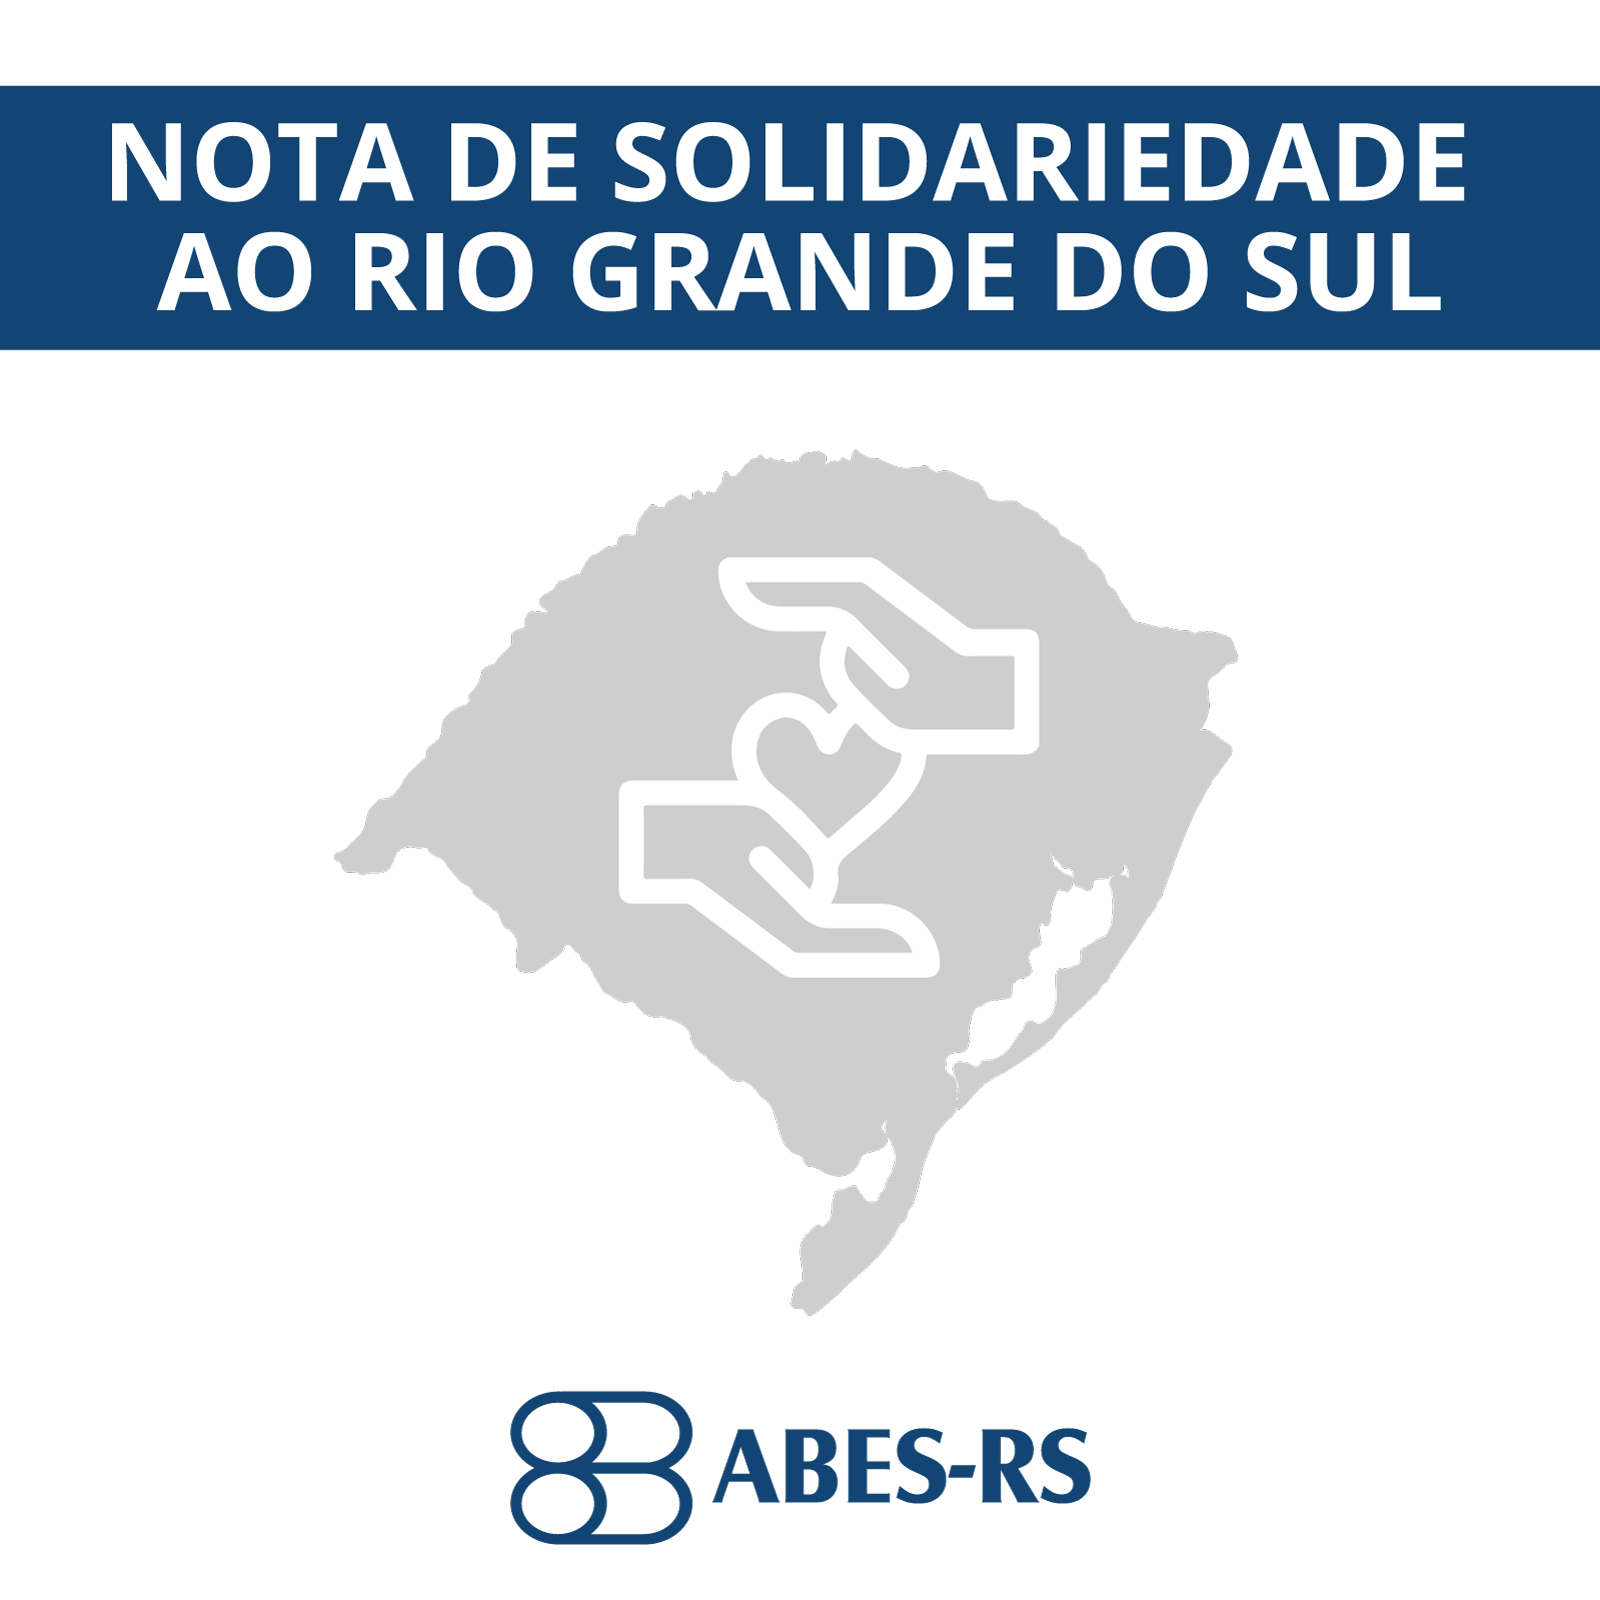 Instituto Geral de Perícias comemora 21 anos de atividades - Portal do  Estado do Rio Grande do Sul